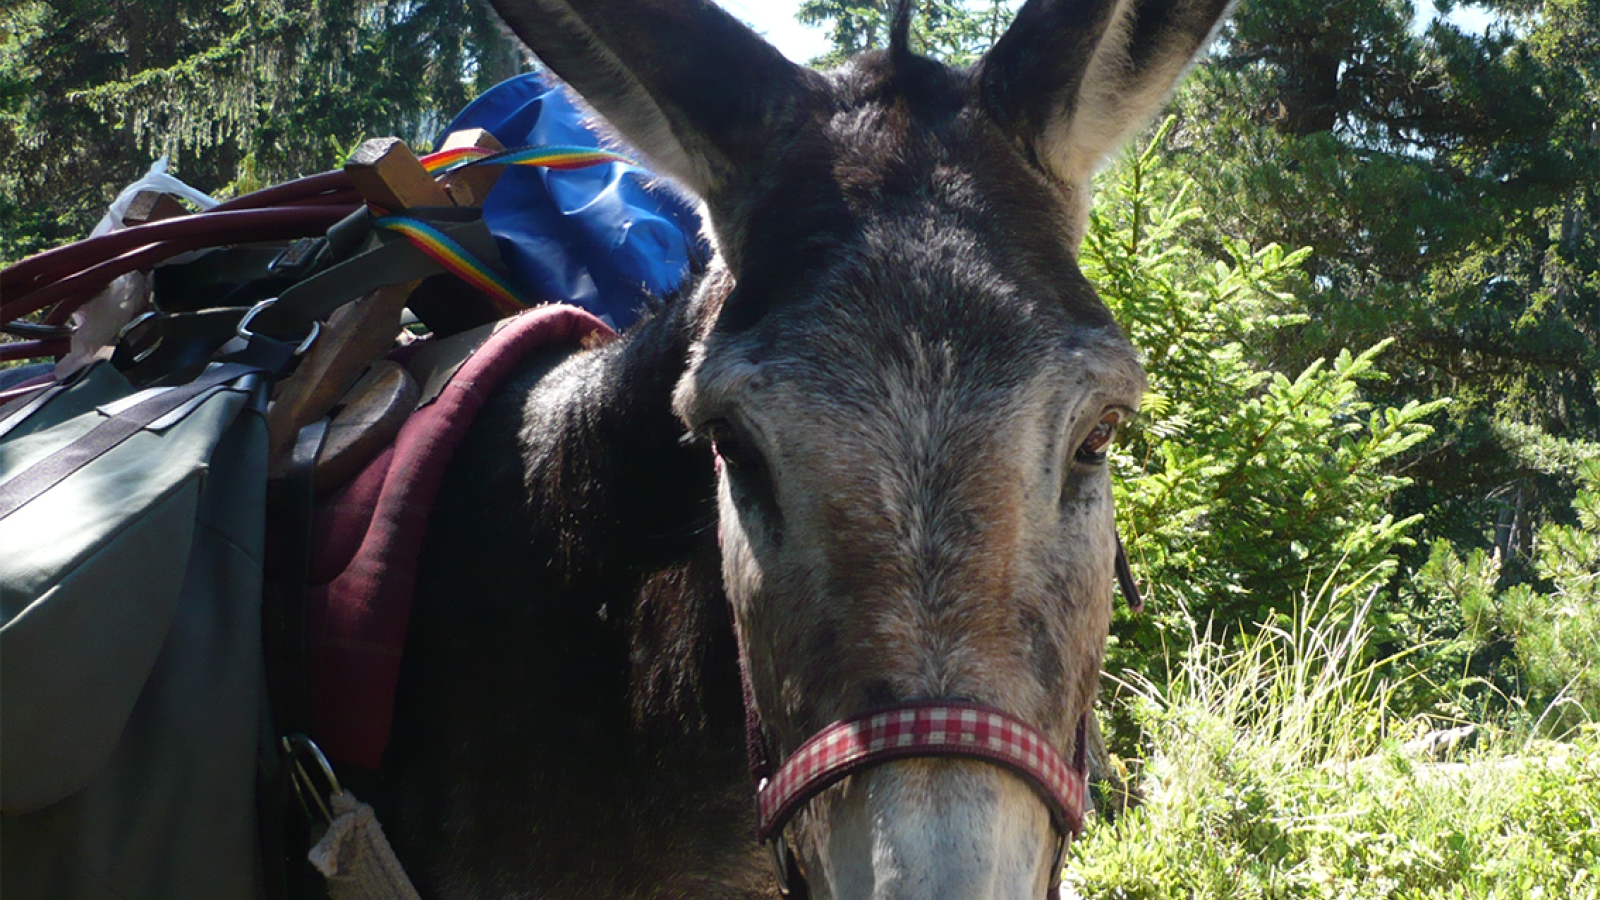 Donkey hire with Anes et Randonnées in Aussois